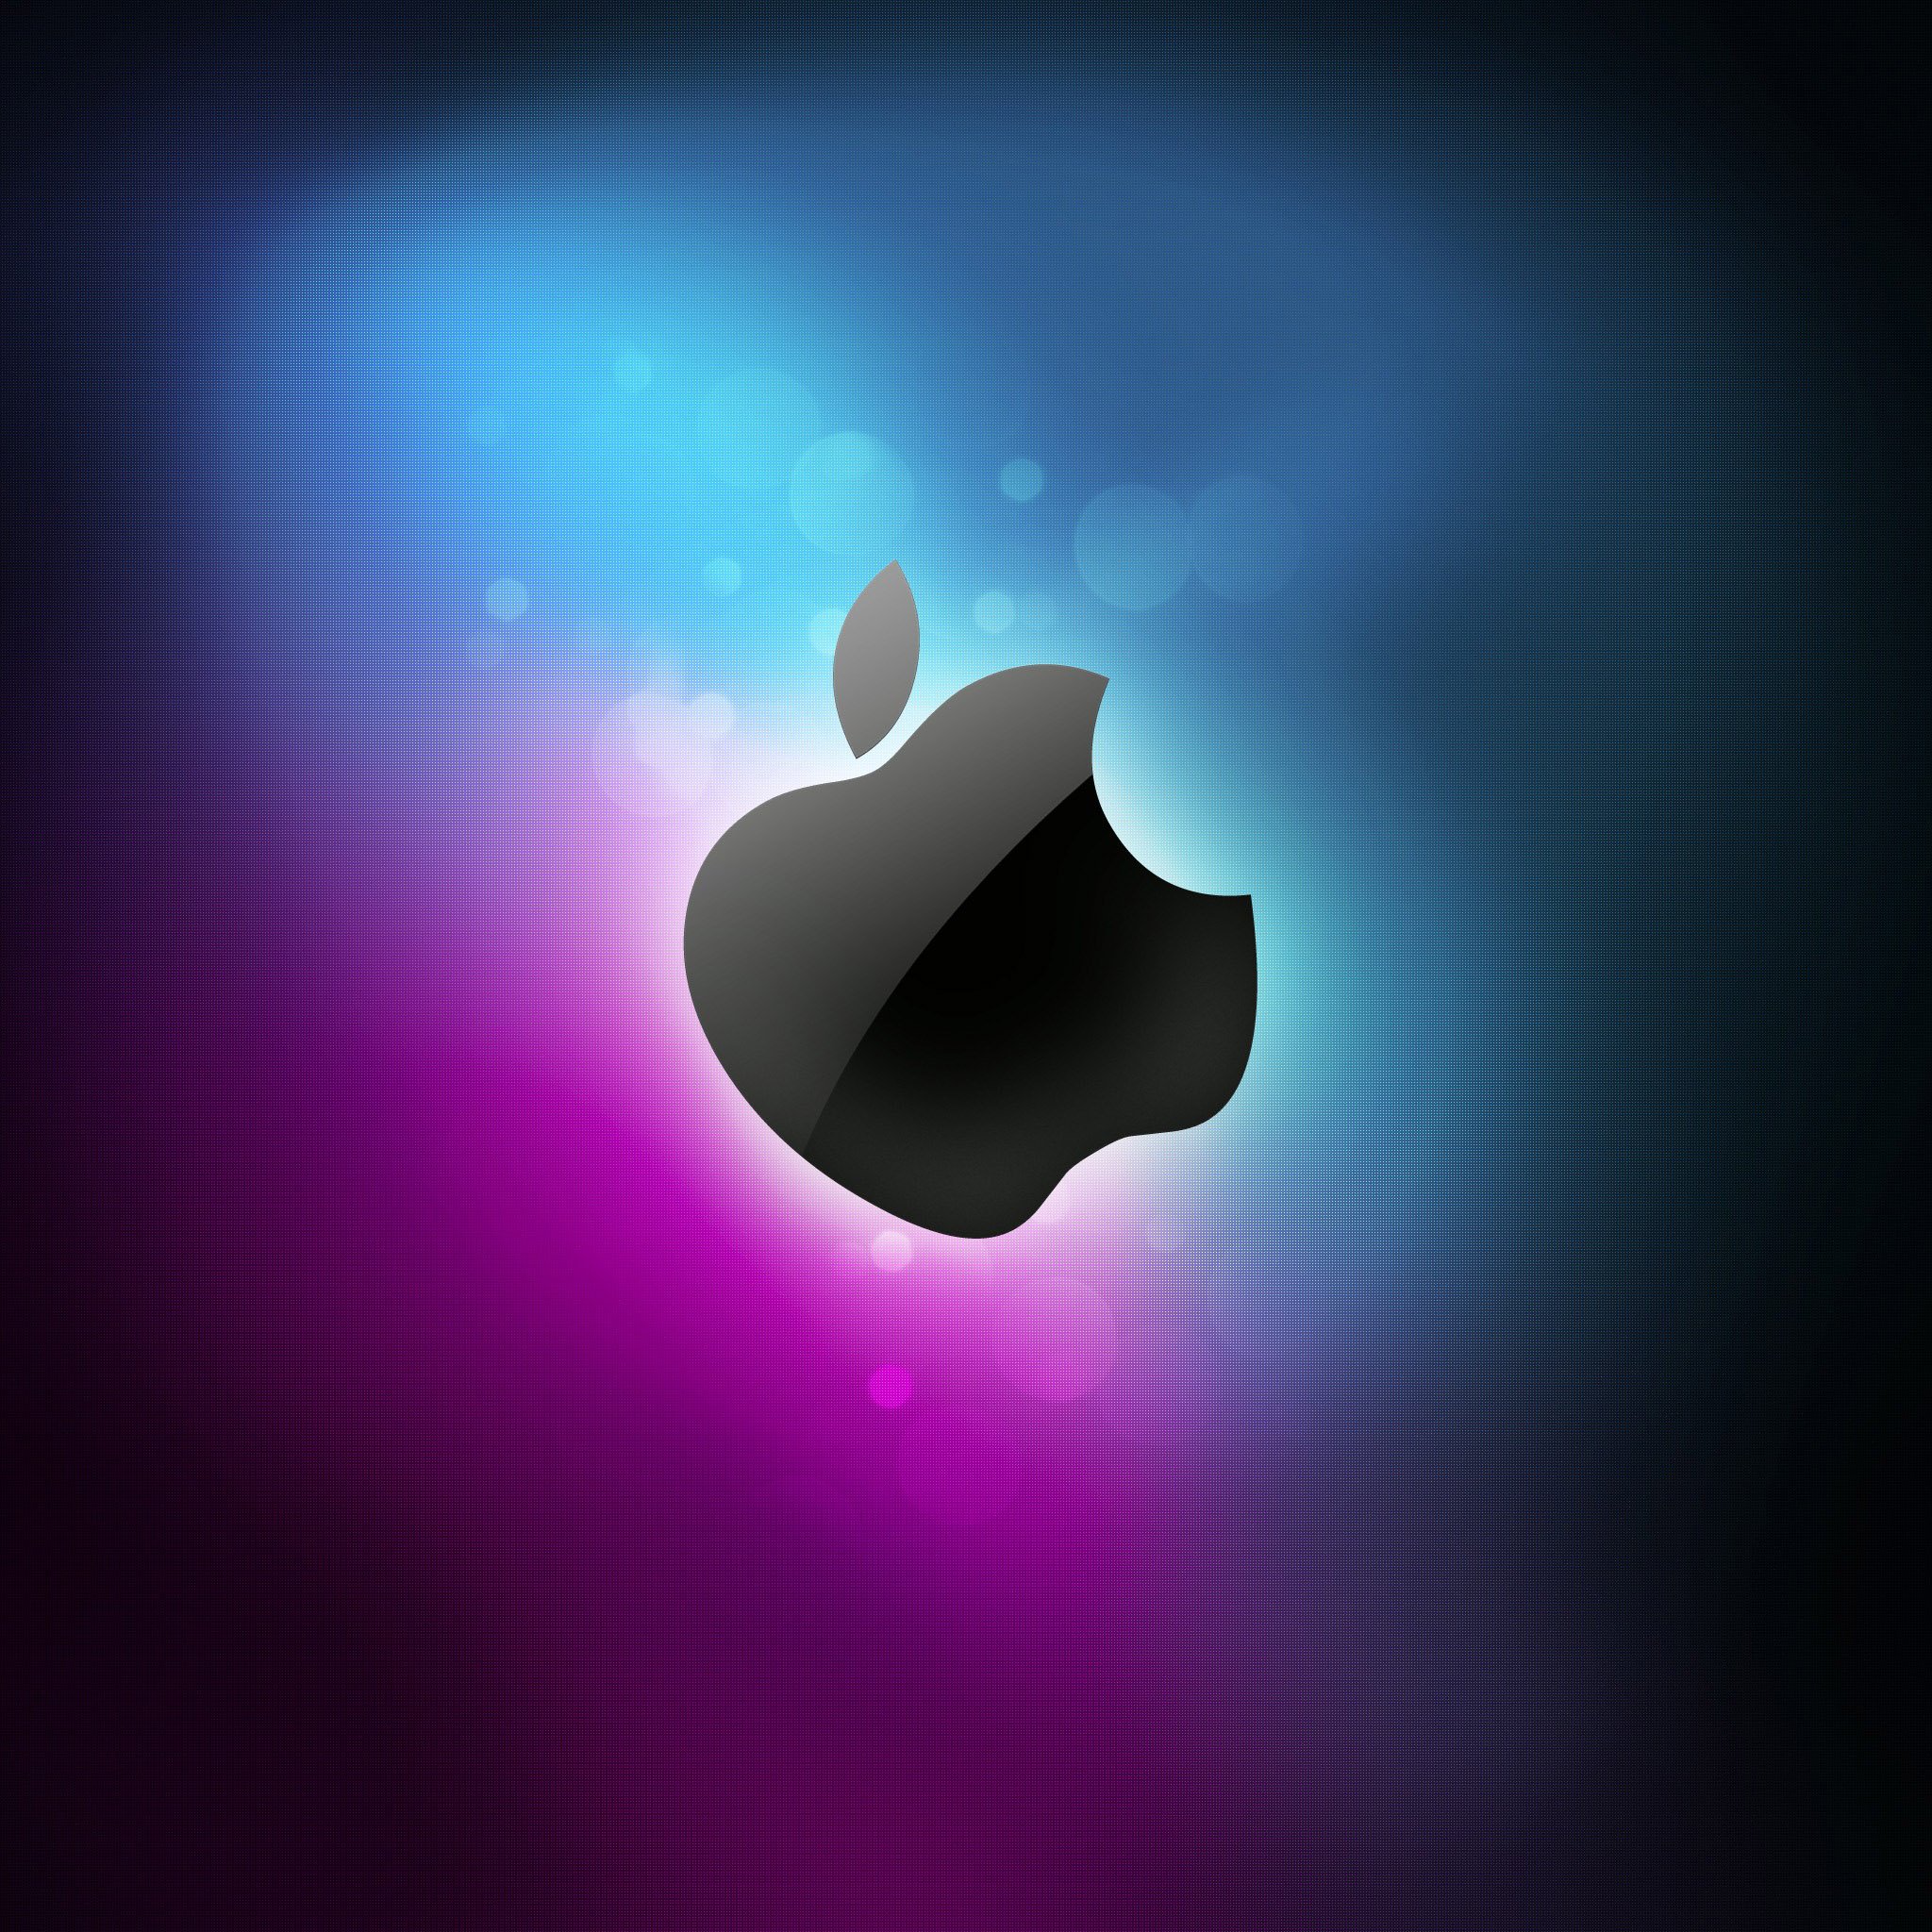 iPad Wallpapers HD apple logo   Apple iPad iPad 2 iPad mini